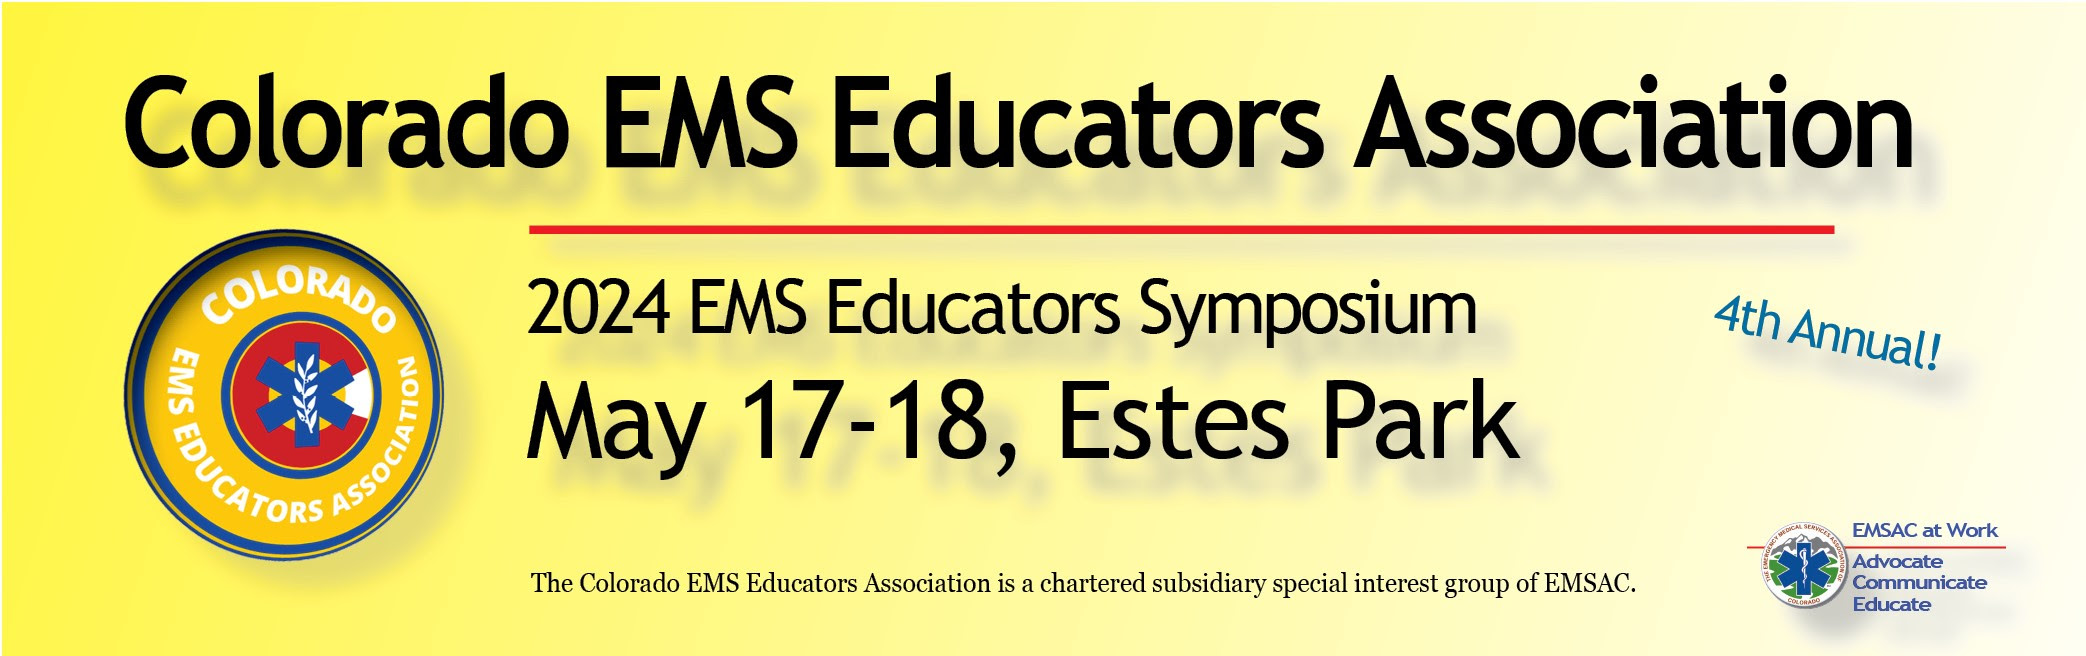 2024-ems-educators-symposium